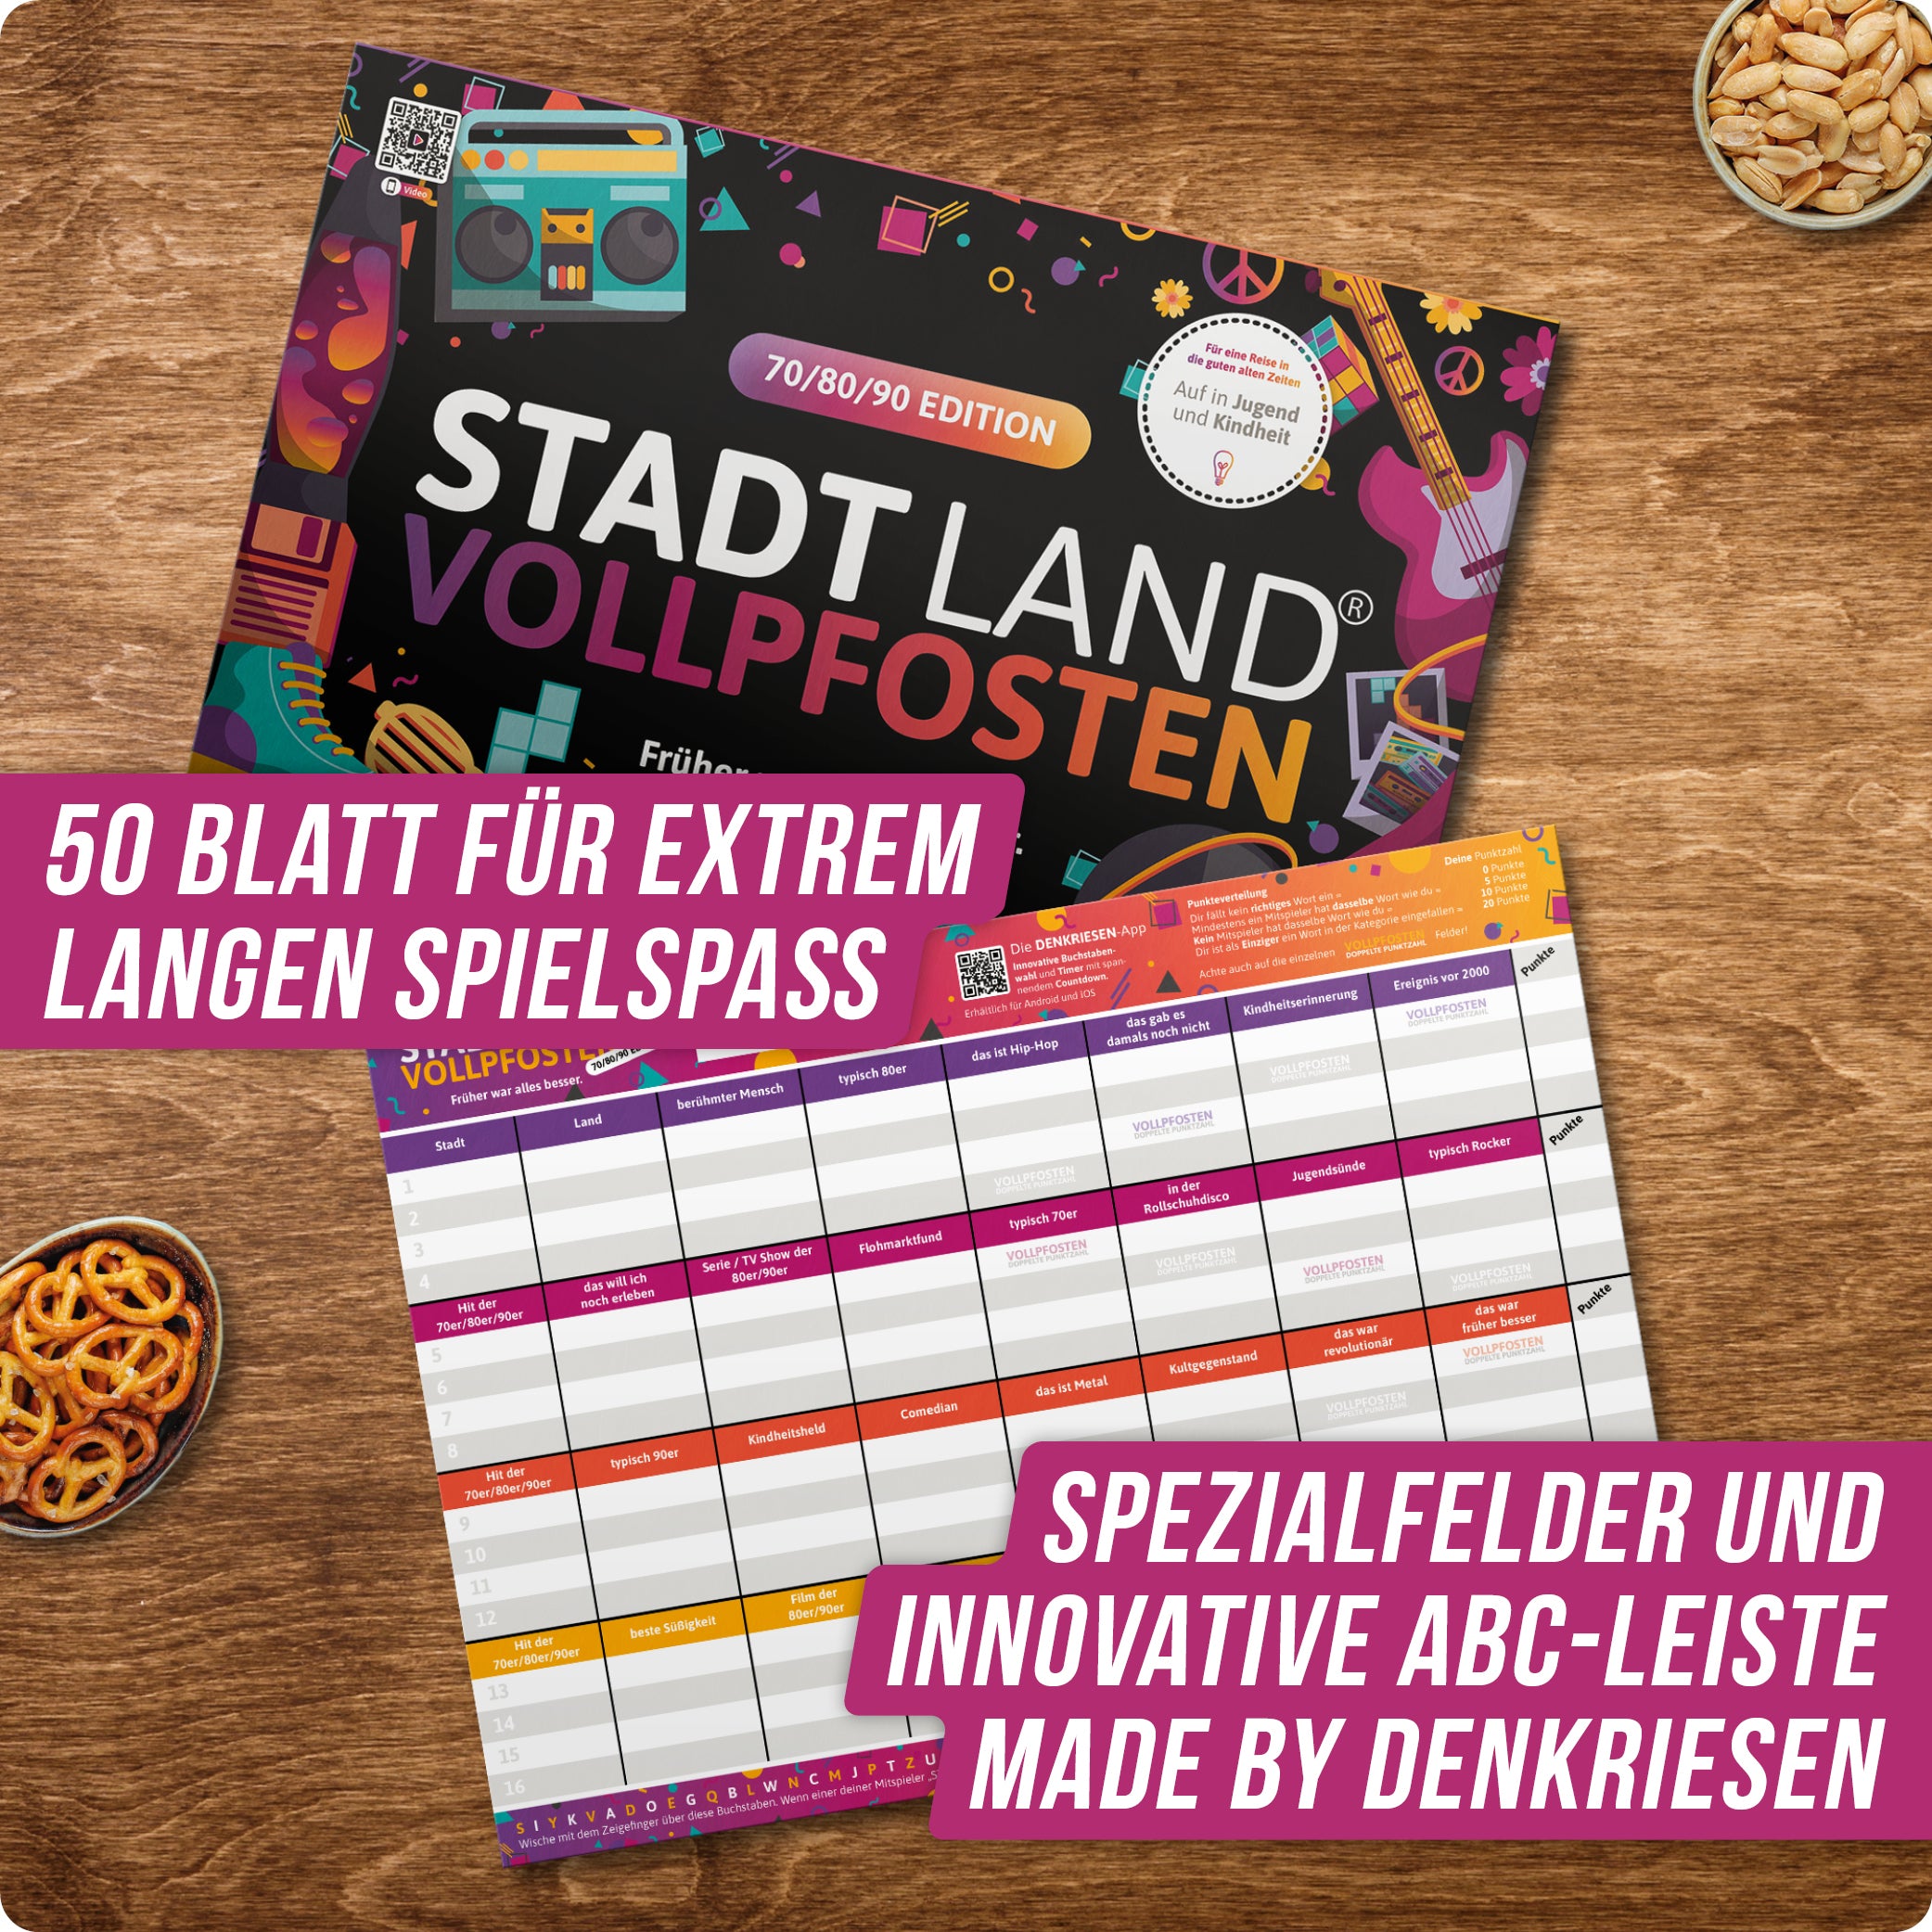 Stadt Land Vollpfosten® 70/80/90 Edition – "Früher war alles besser." | A4 Spielblock